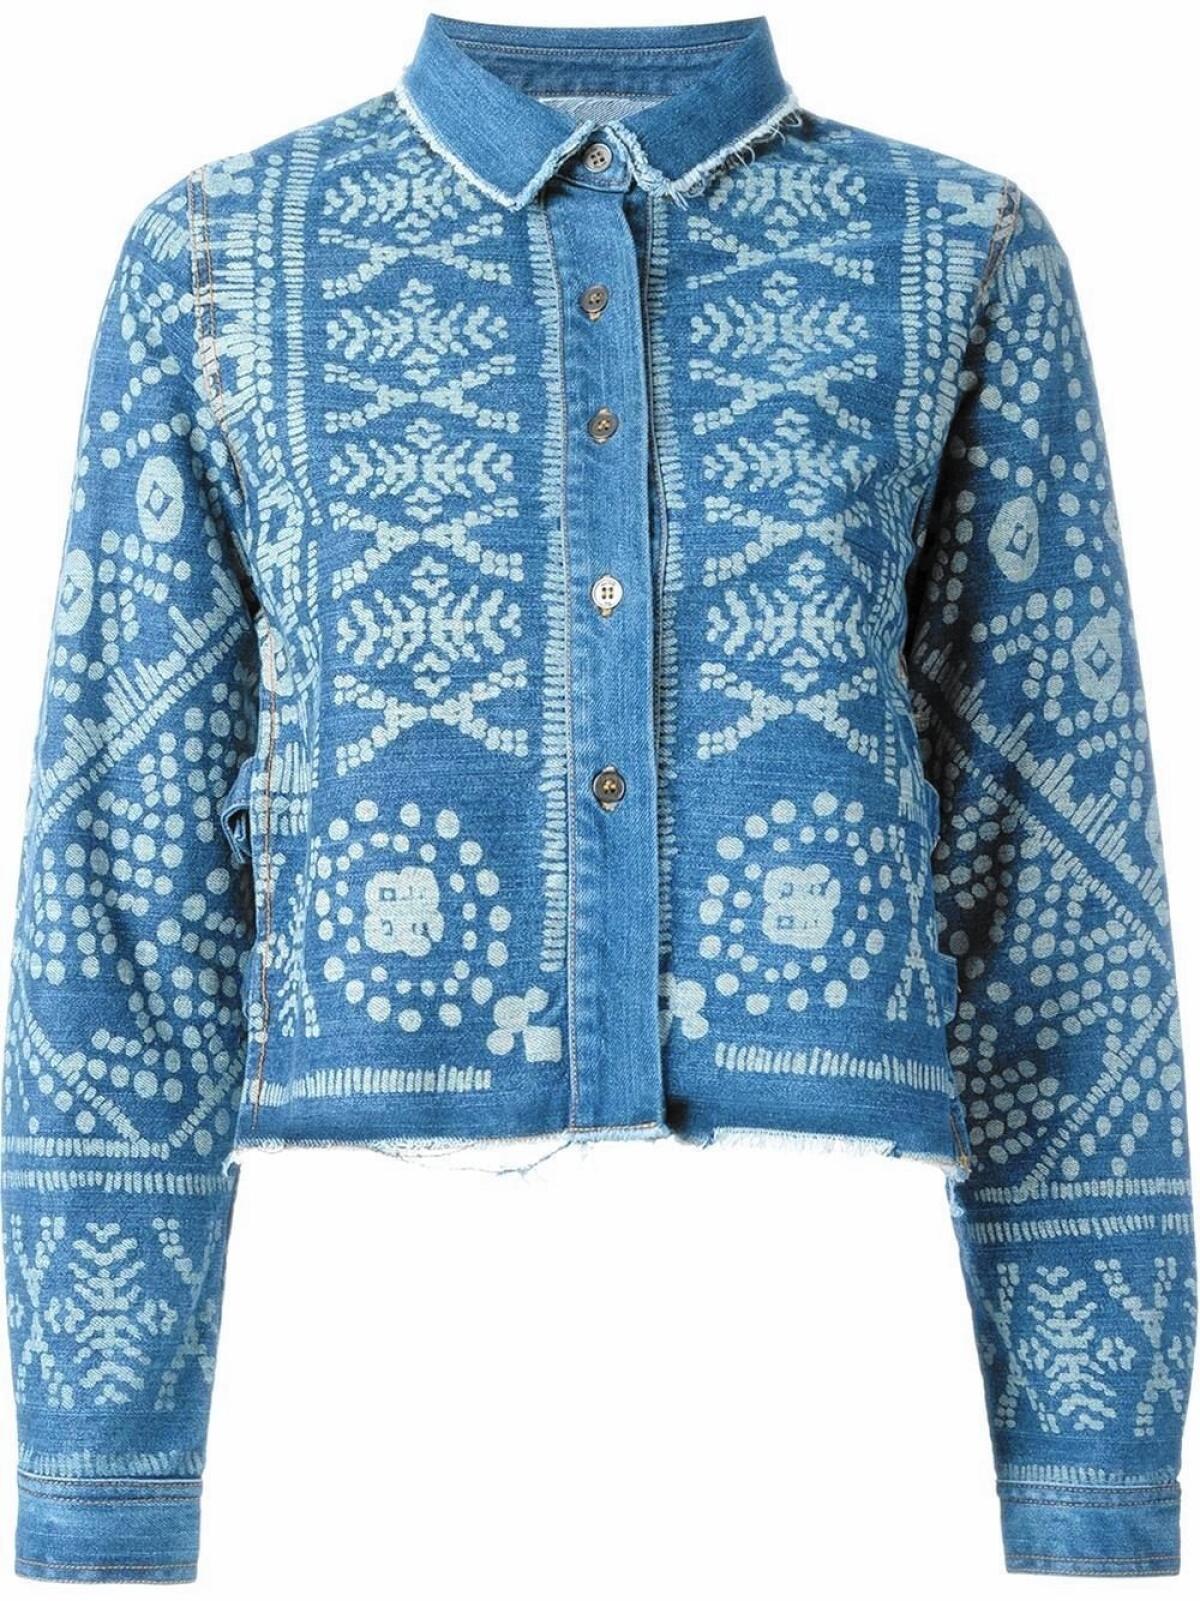 Sea printed denim jacket, $403.53, at www.farfetch.com